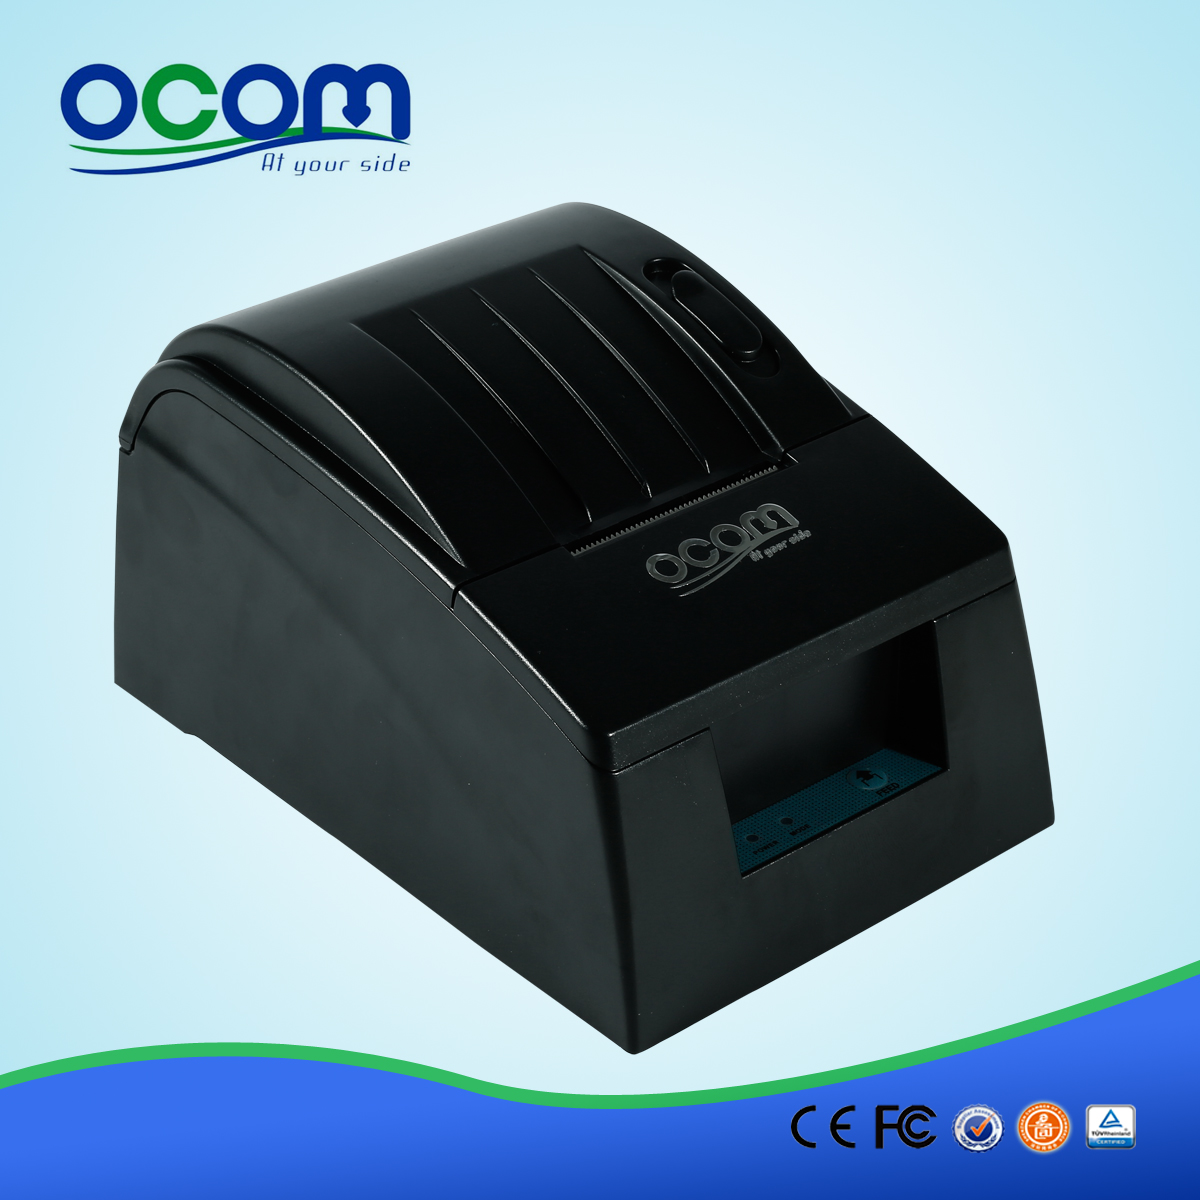 2 pollici Pos stampante termica per ricevute OCPP-585